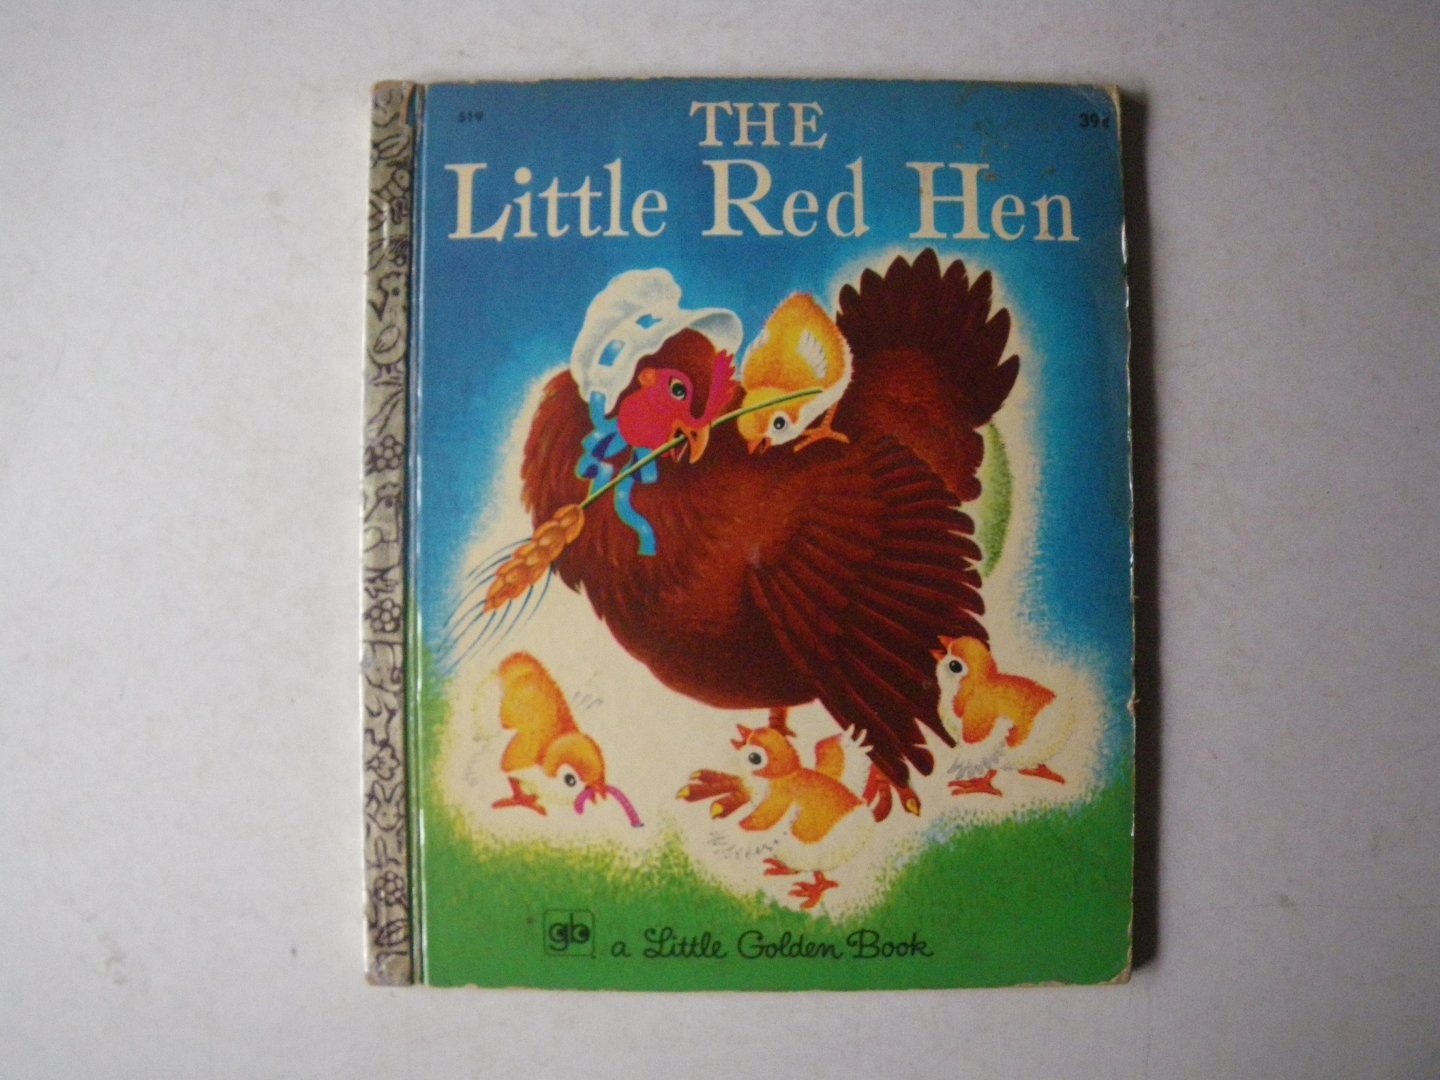 J.P. Miller - The Little Red Hen